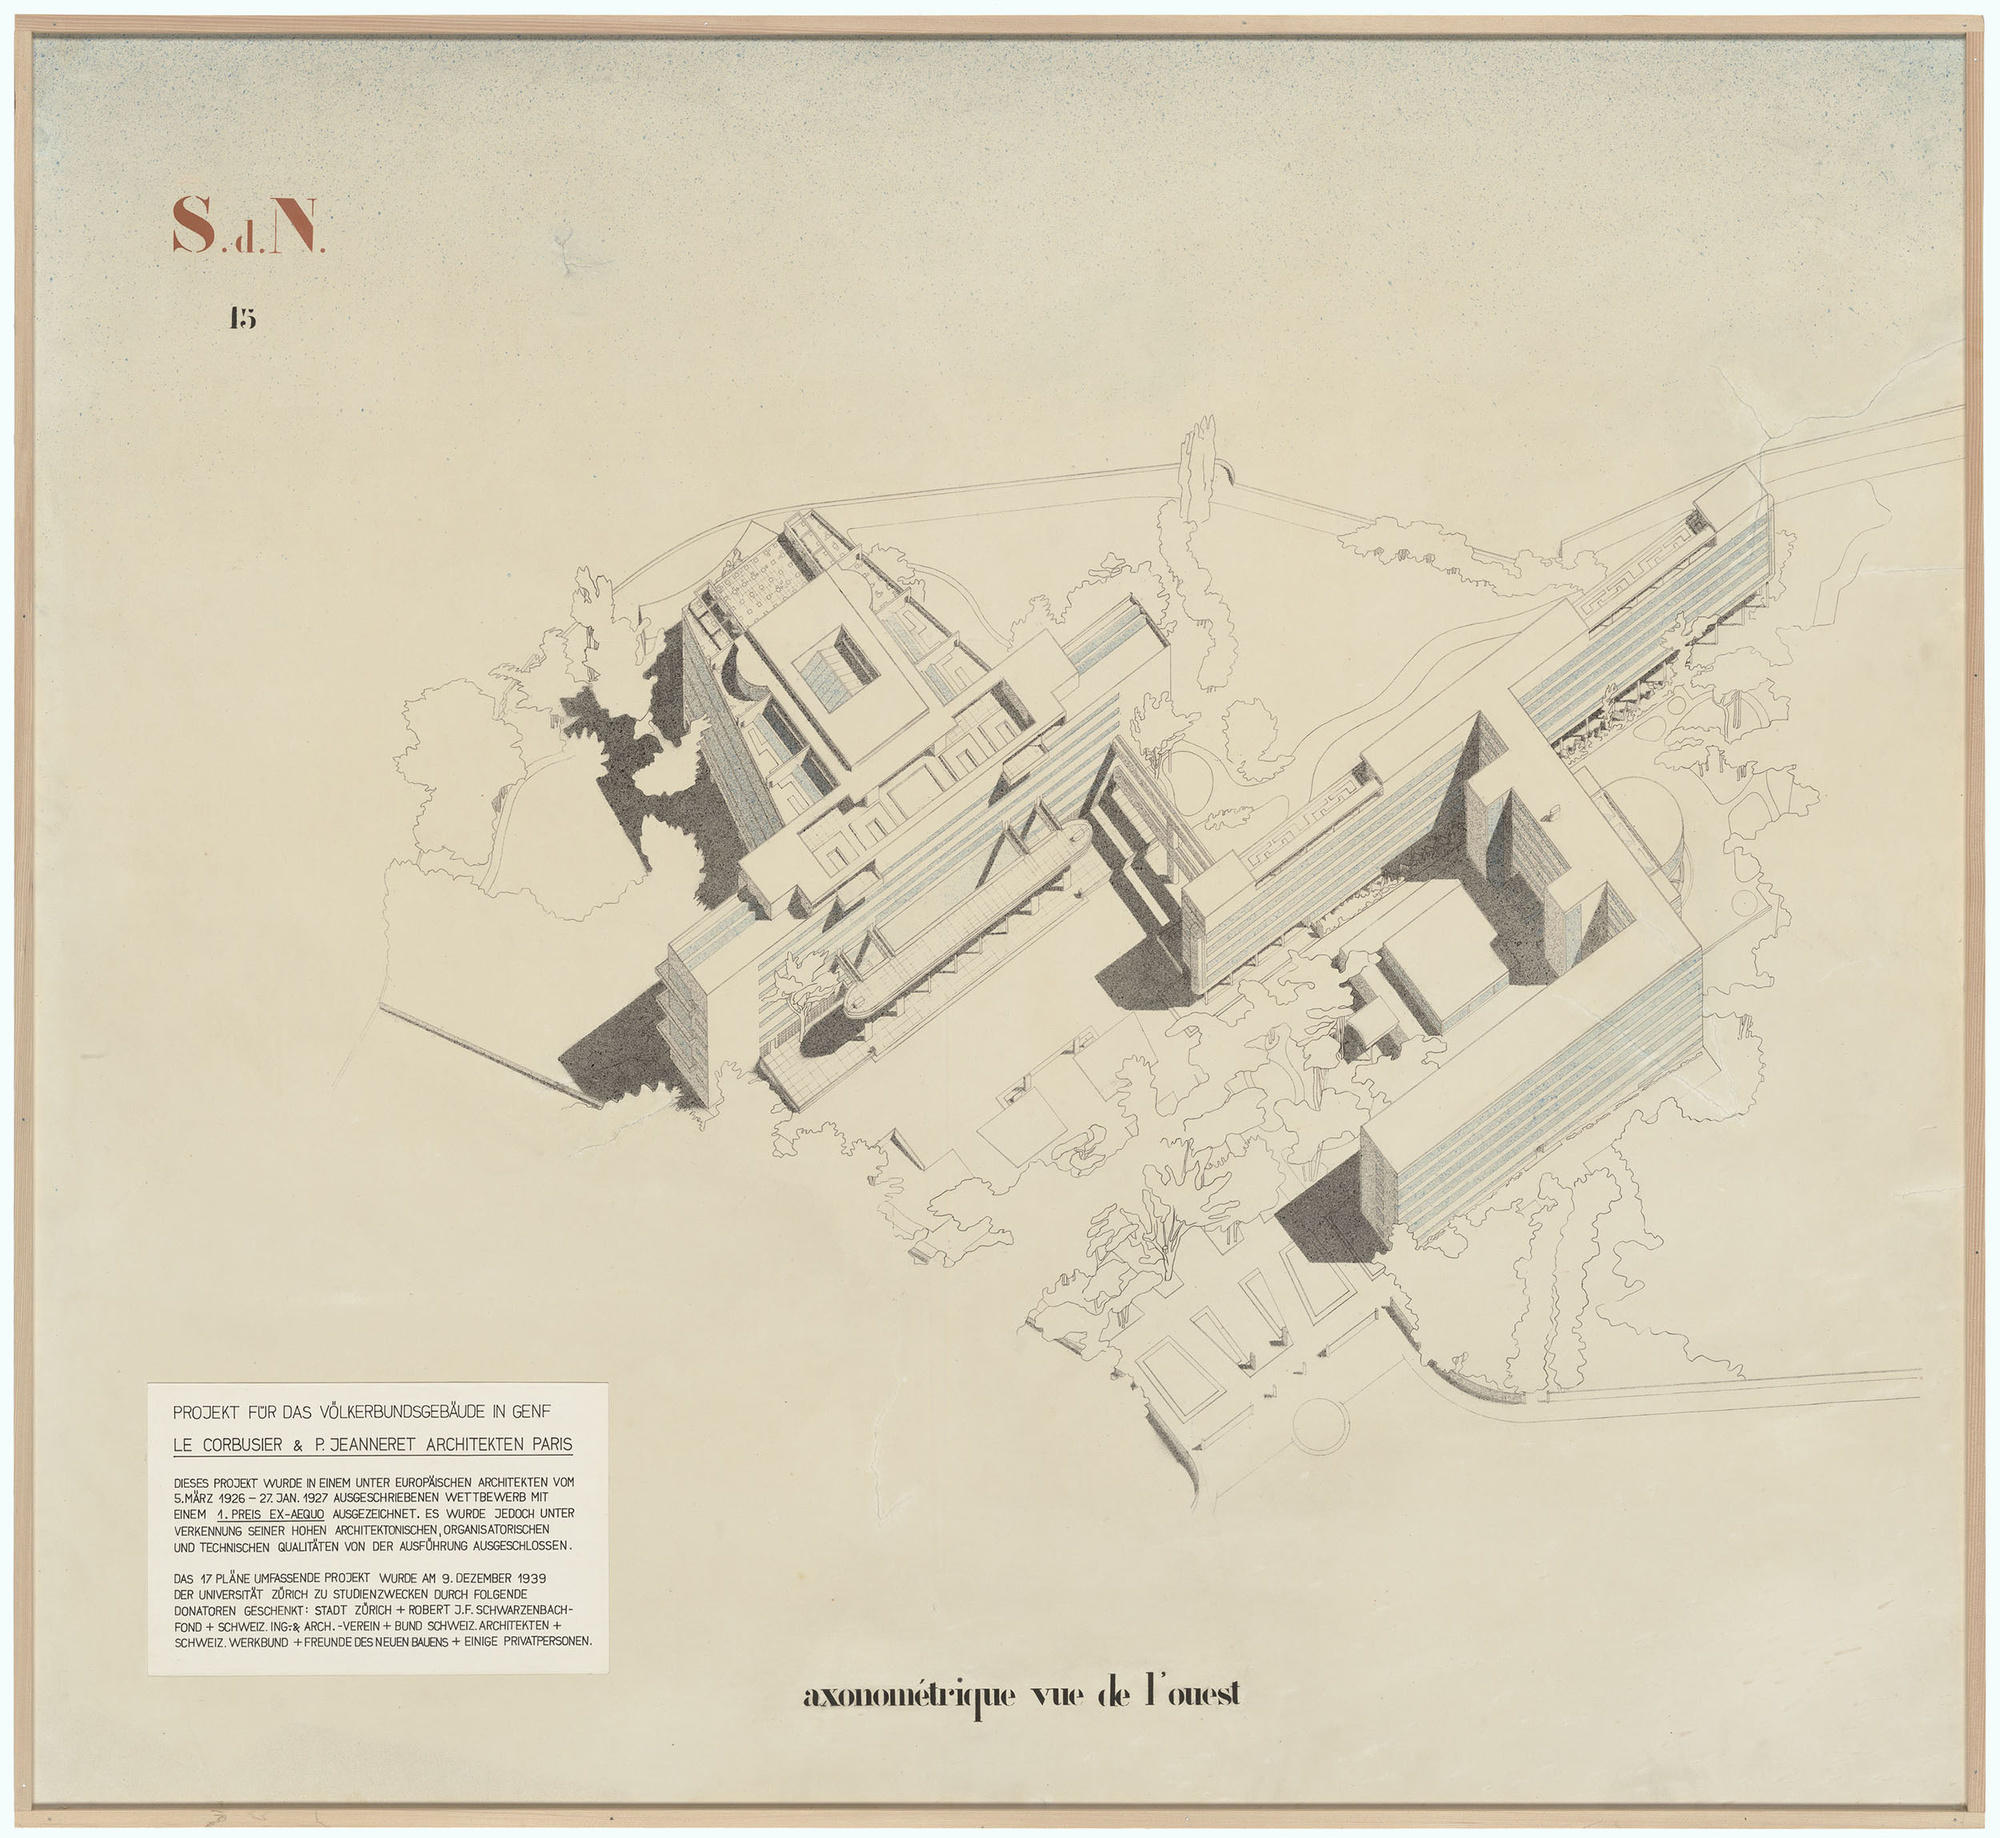 建築家ル・コルビュジエによるパレ・デ・ナシオンの完成予想図。ル・コルビュジエの作品は当時開催されたコンペで1位に輝いたが、最終的にはジュネーブ州当局によって却下された